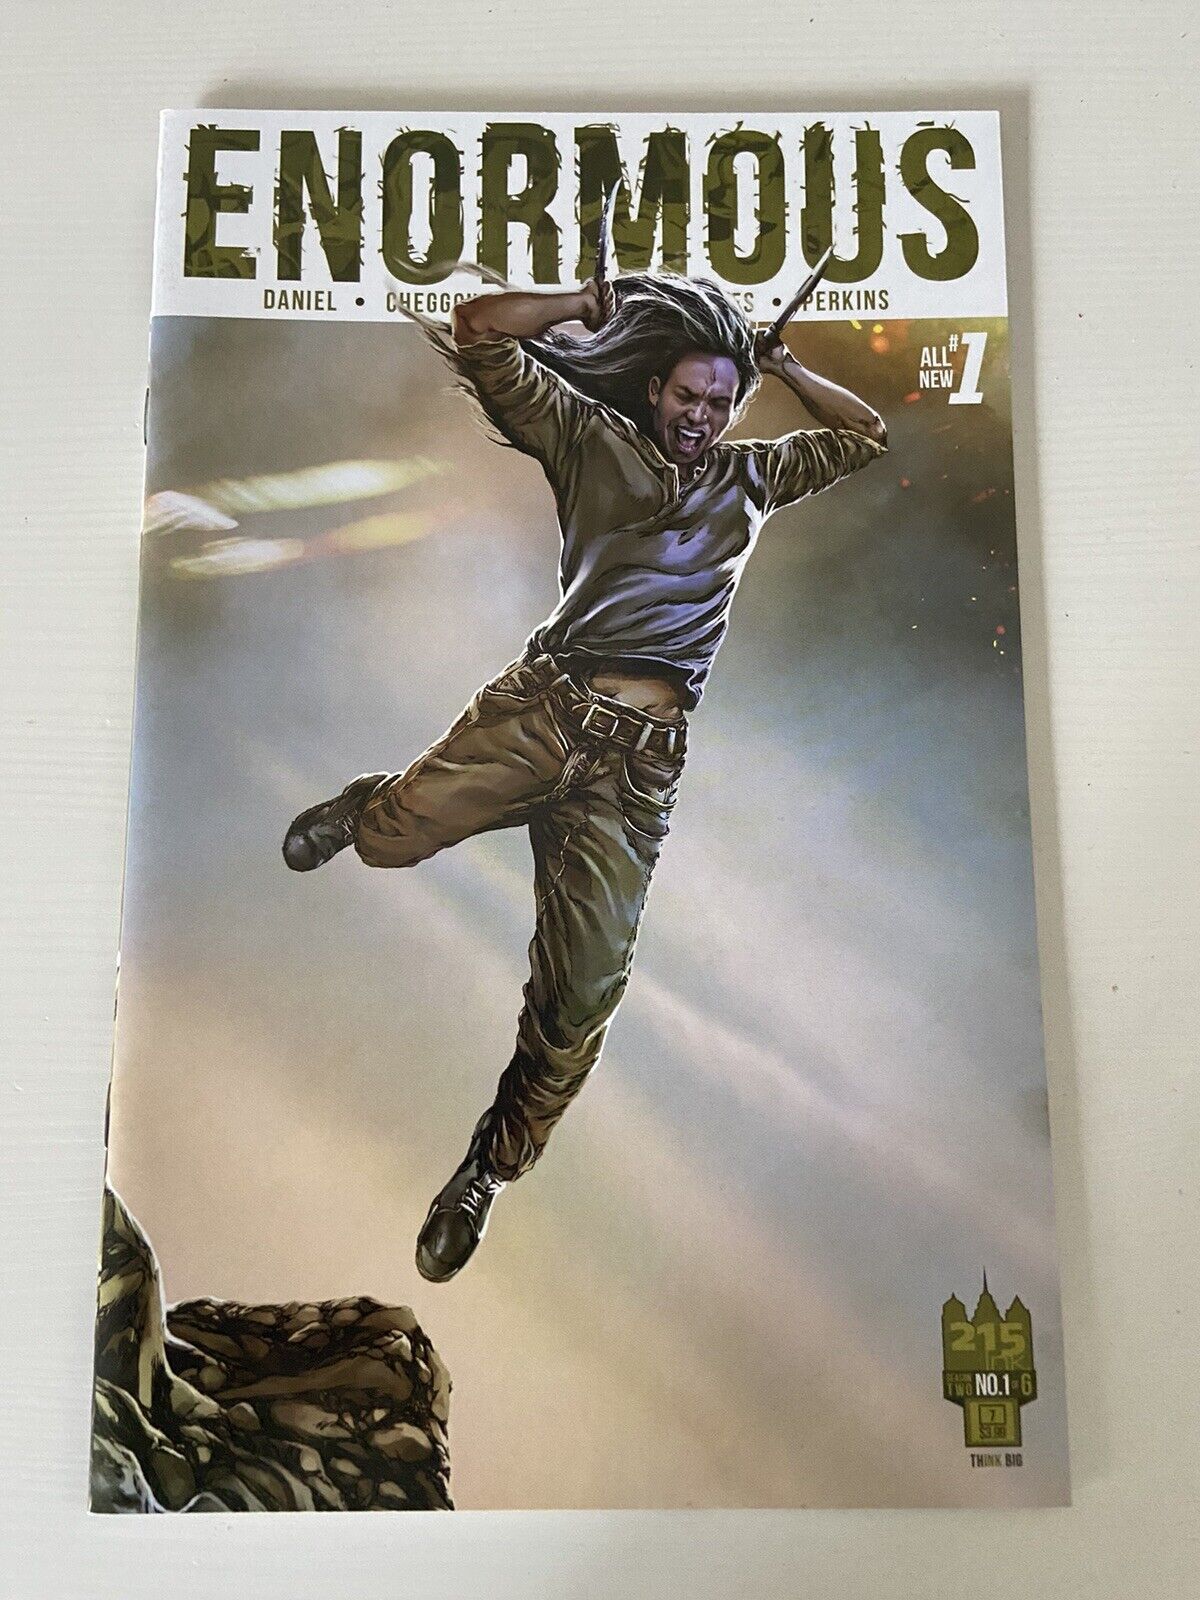 Enormous Vol. 2 #1 1st Print 215 Ink Comics Tim Daniel Mehdi Cheggour 